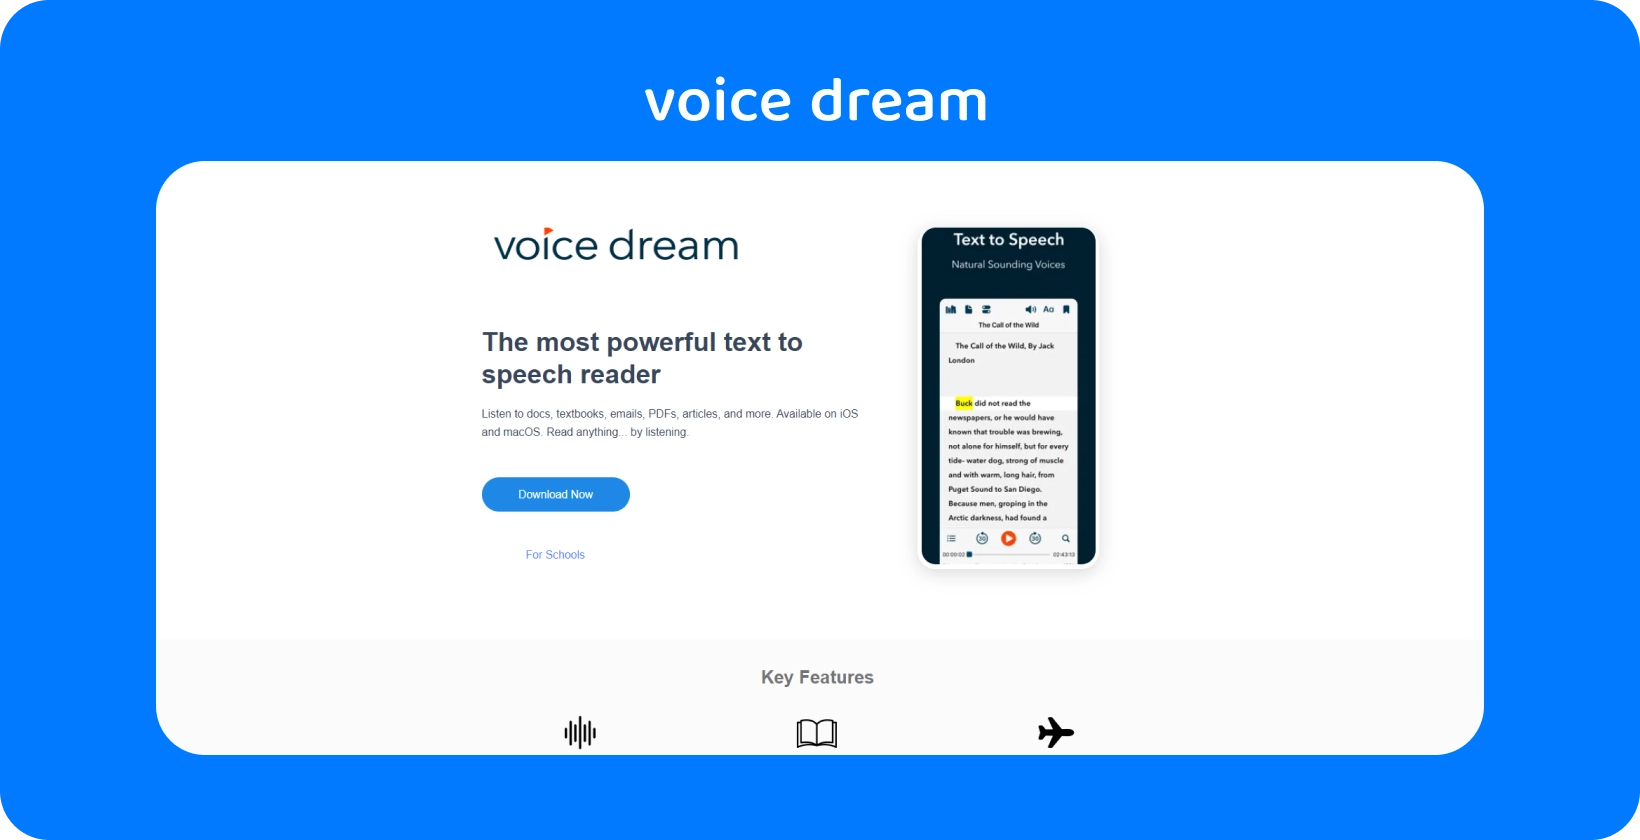 Interfața aplicației Voice Dream prezintă un cititor puternic de text transformat în vorbire pentru diverse documente de pe dispozitive mobile.